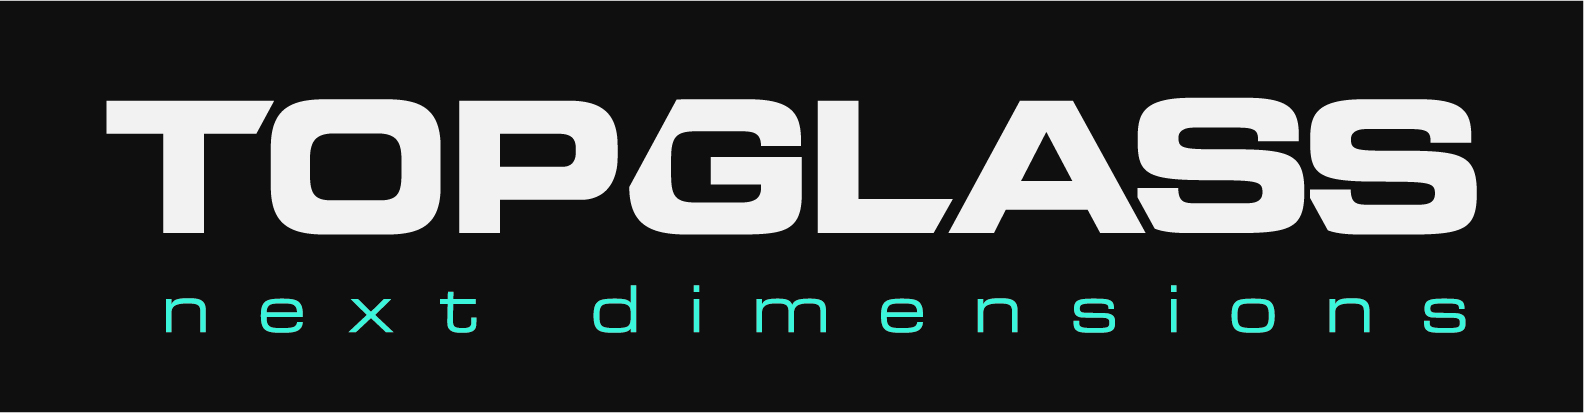 logo_Topglass